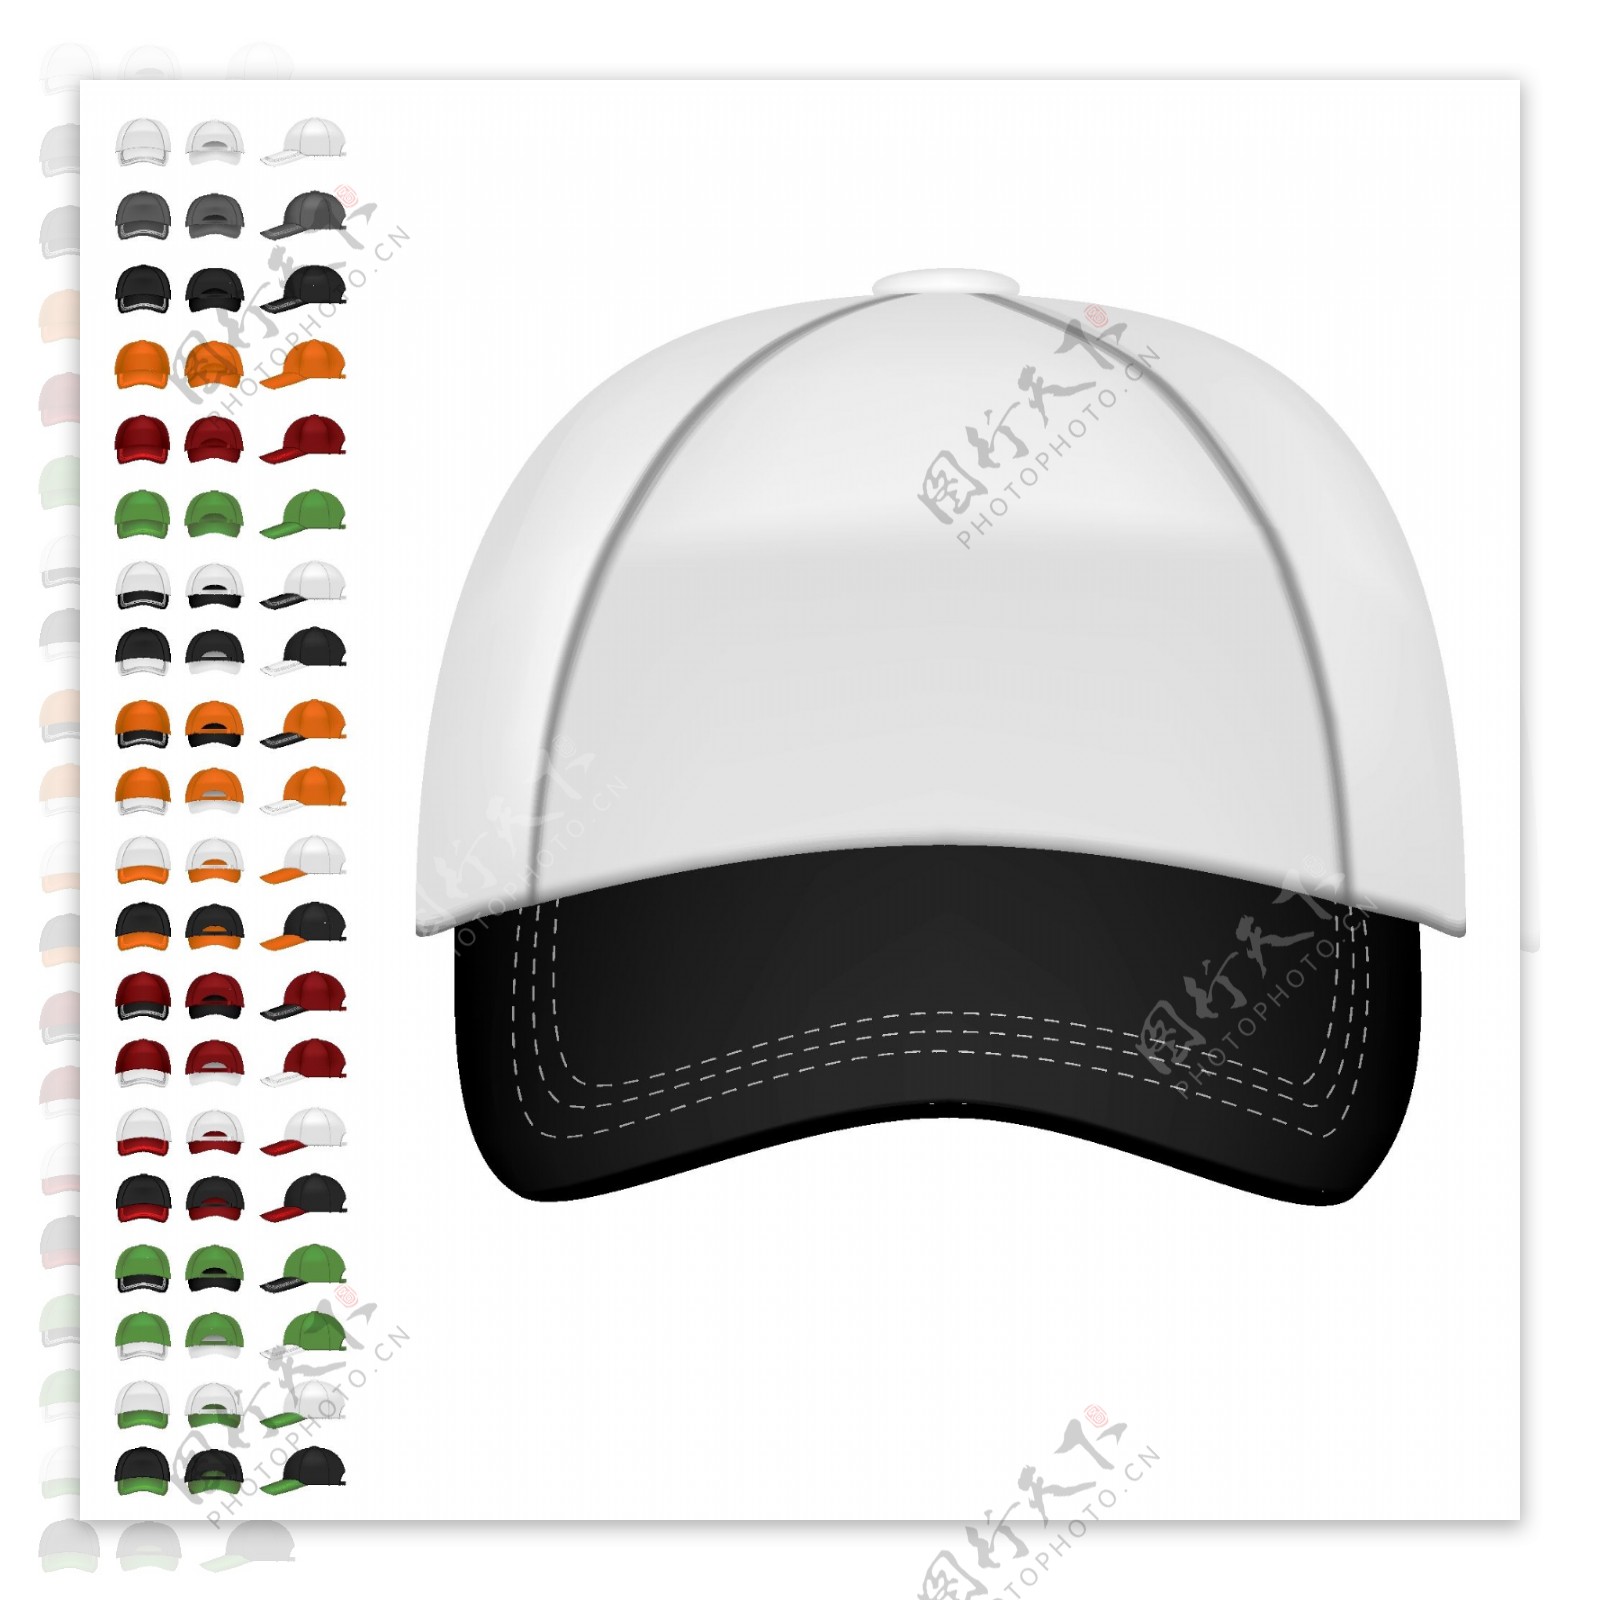 时尚的棒球帽设计矢量素材